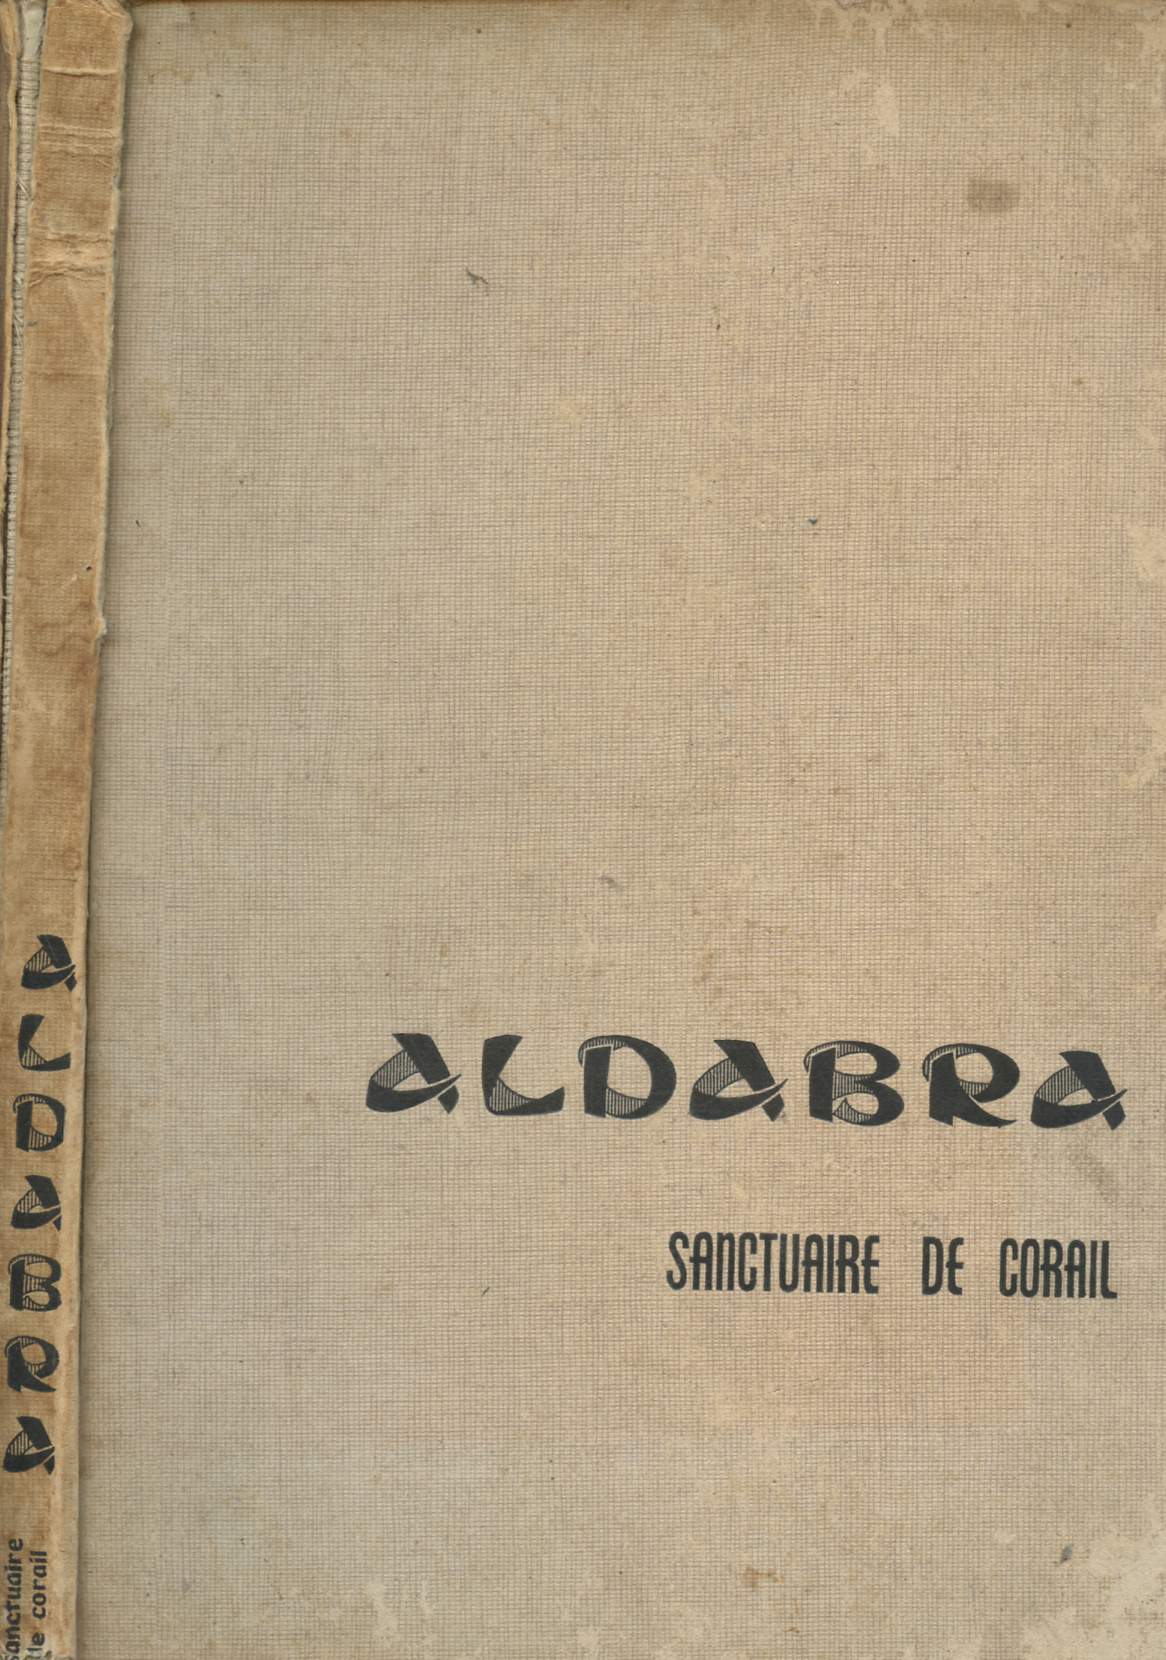 ALDABRA : SANCTUAIRE DE CORAIL